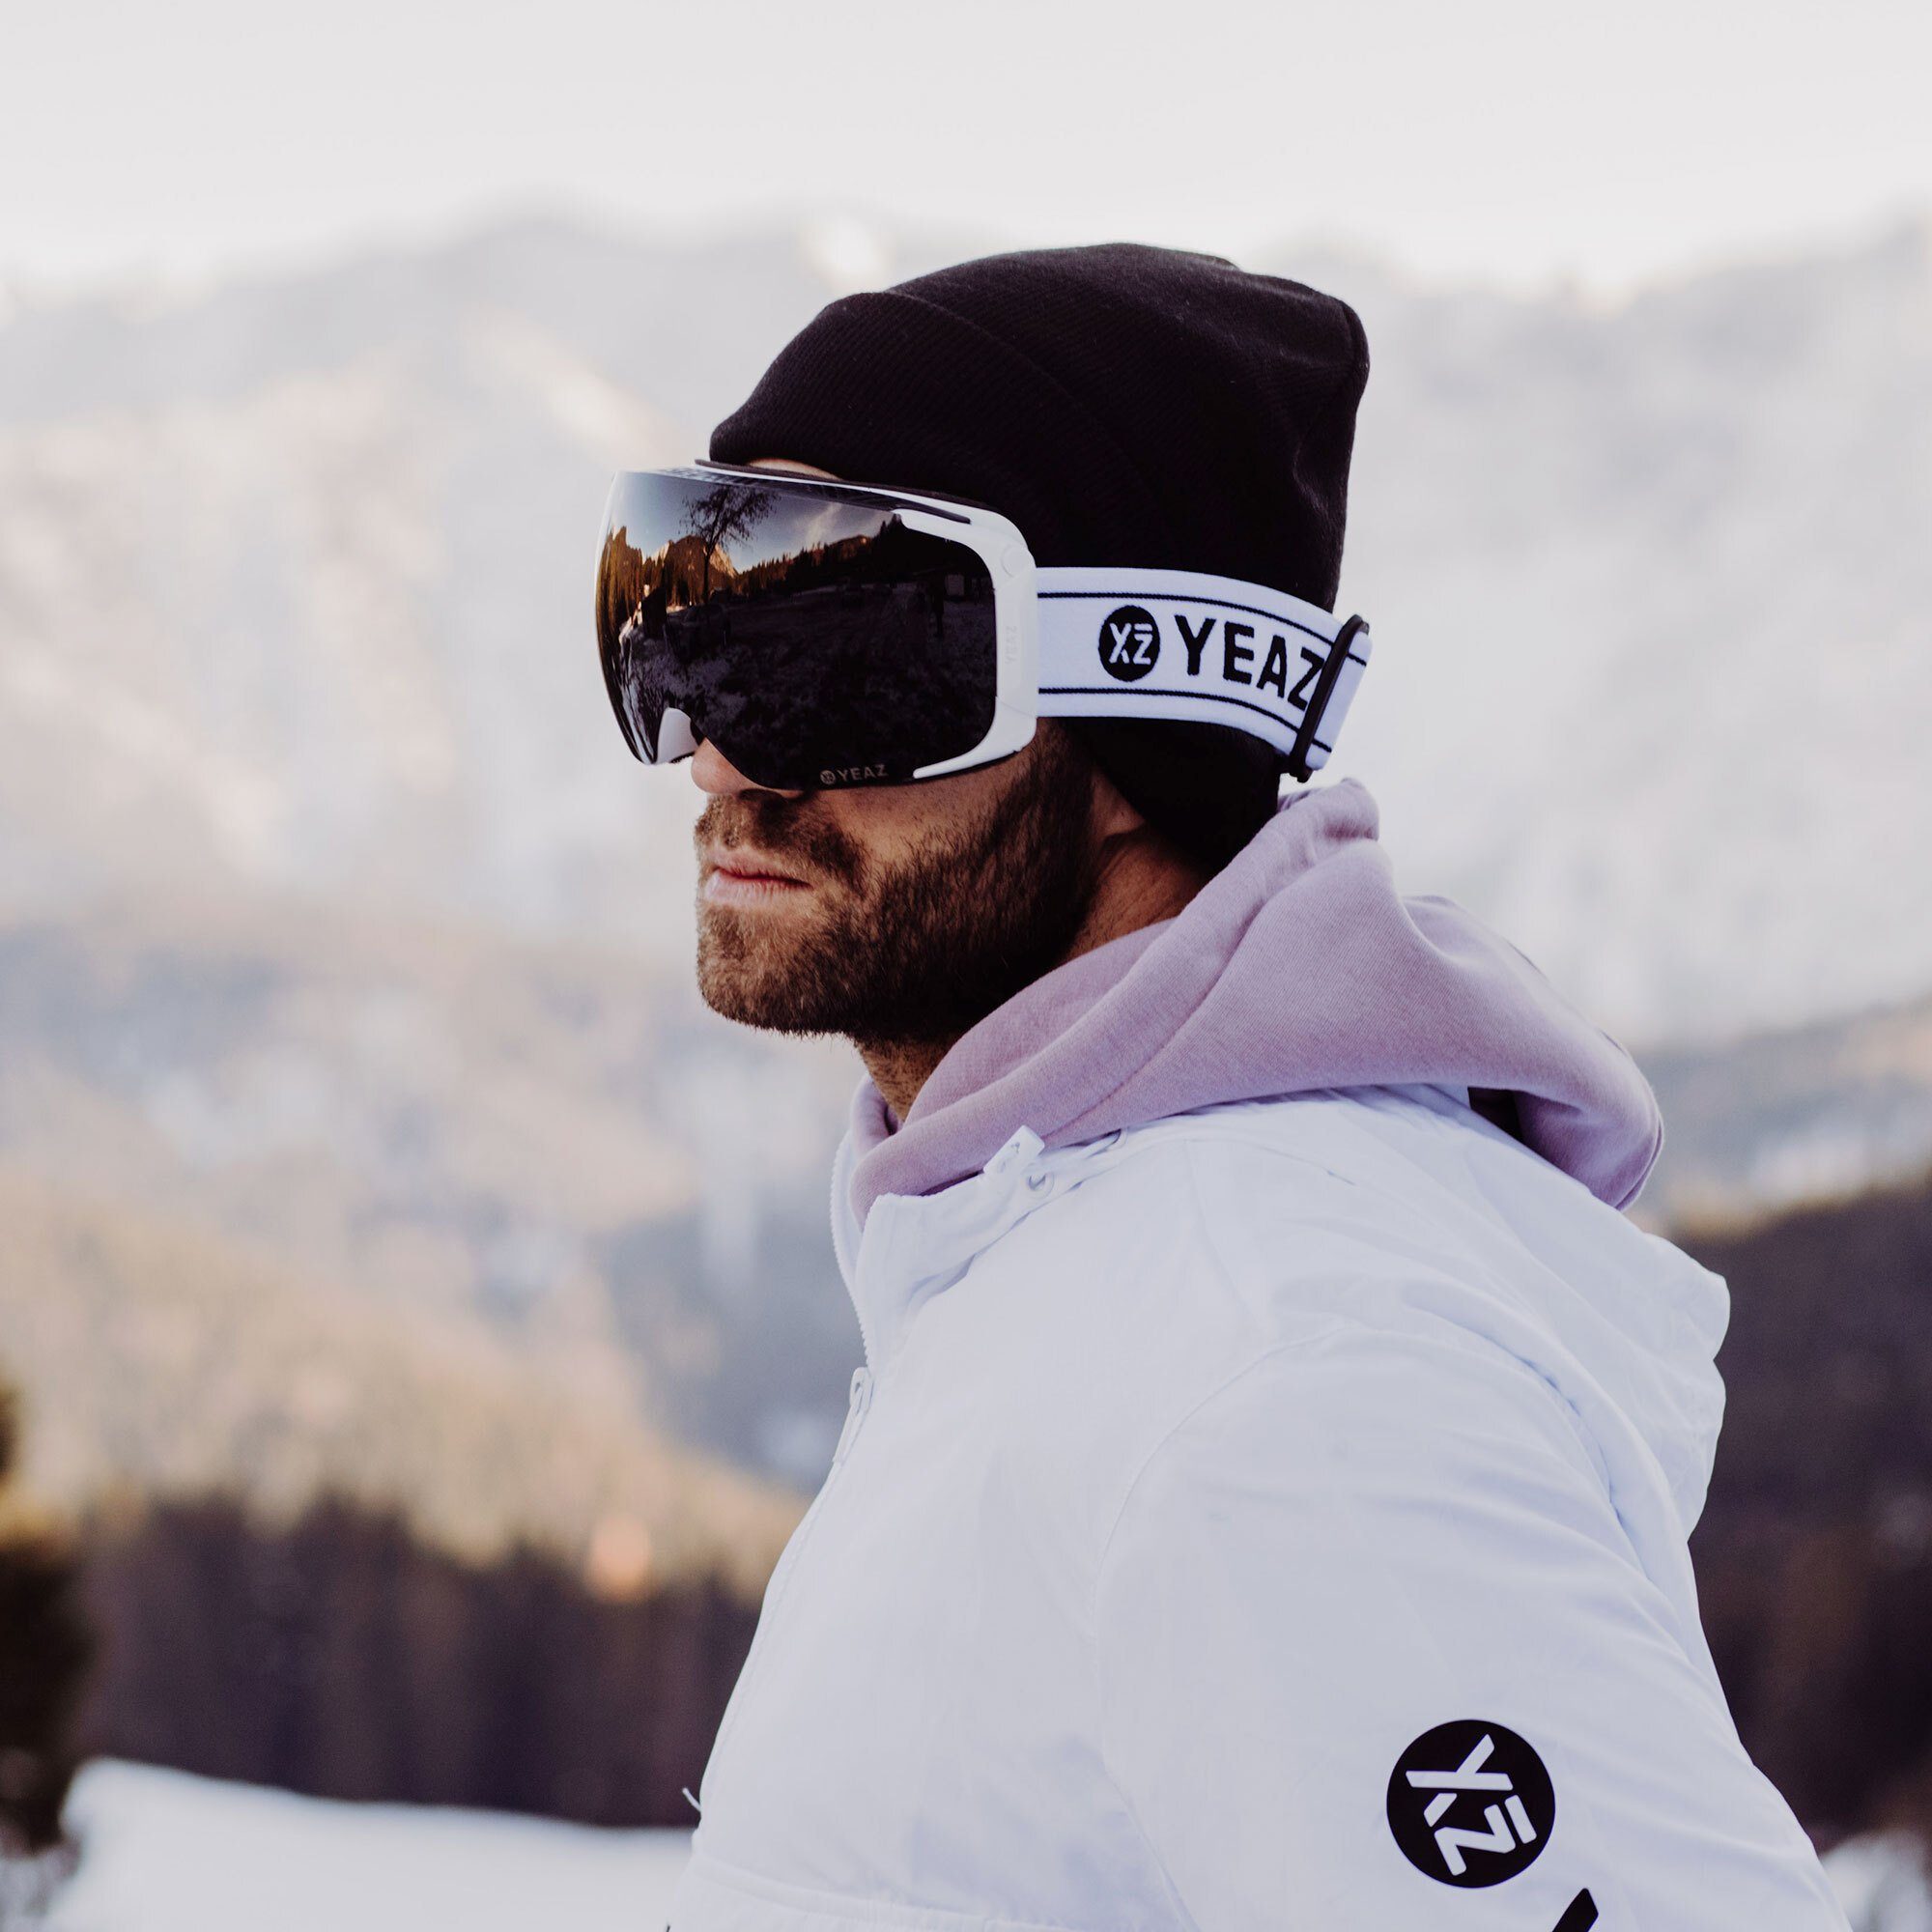 Snowboardbrille für TWEAK-X YEAZ und Erwachsene und Premium-Ski- ski- Skibrille Jugendliche snowboard-brille, und